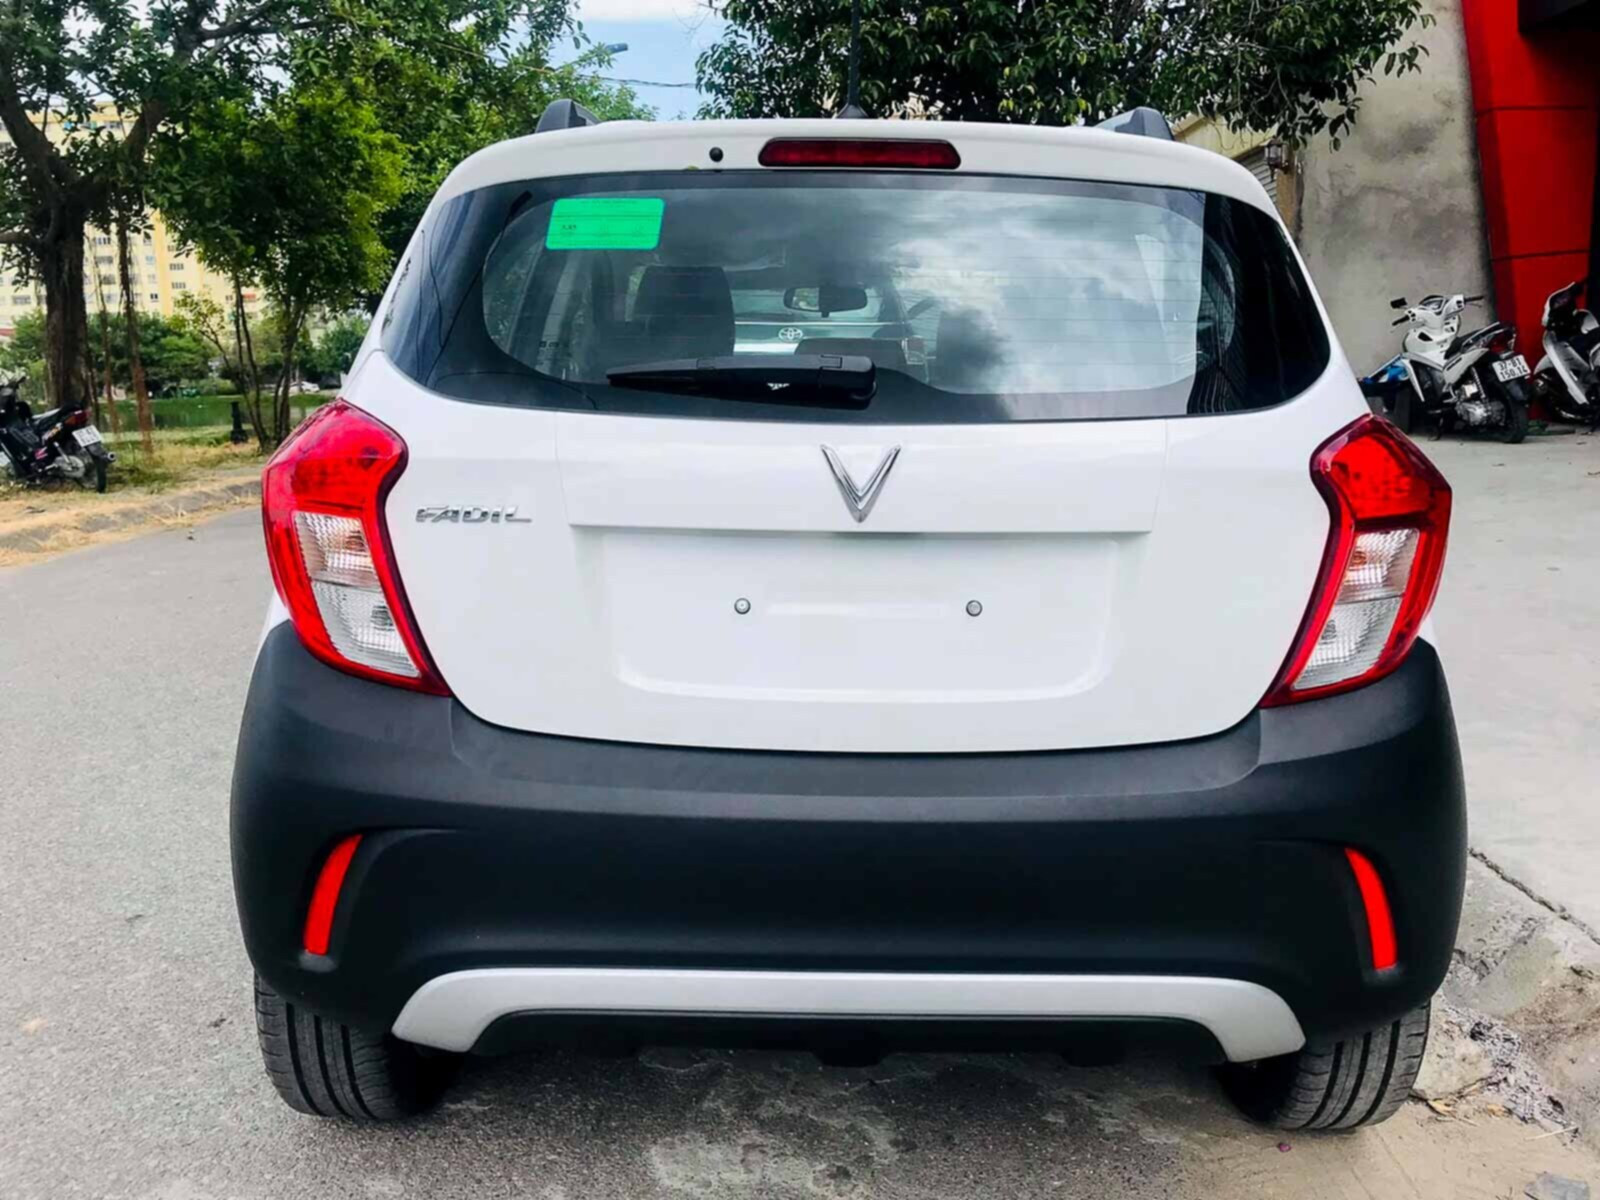 Đuôi xe có logo hình chữ V đặt ở chính giữa